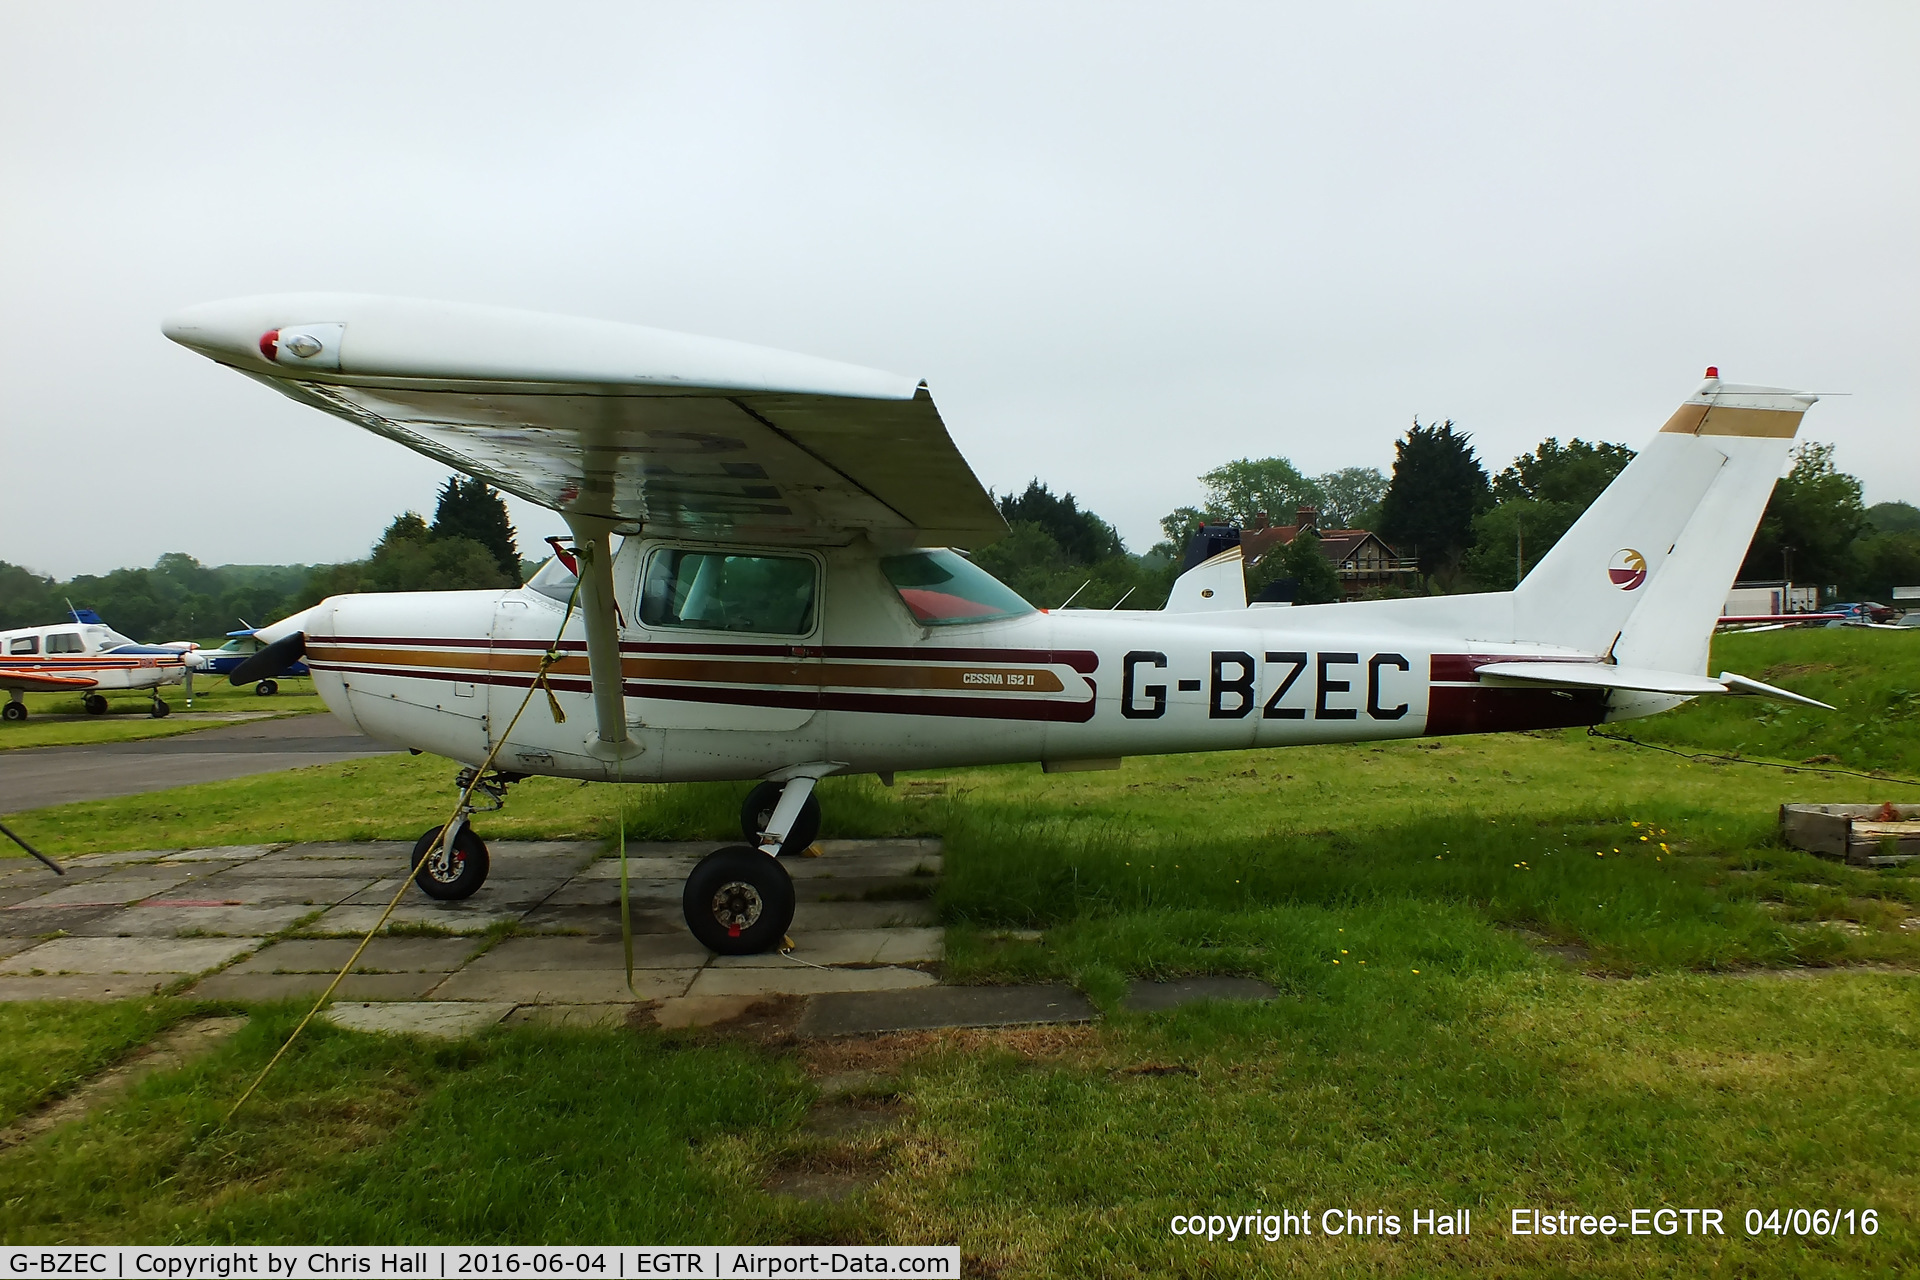 G-BZEC, 1980 Cessna 152 II C/N 15284475, at Elstree